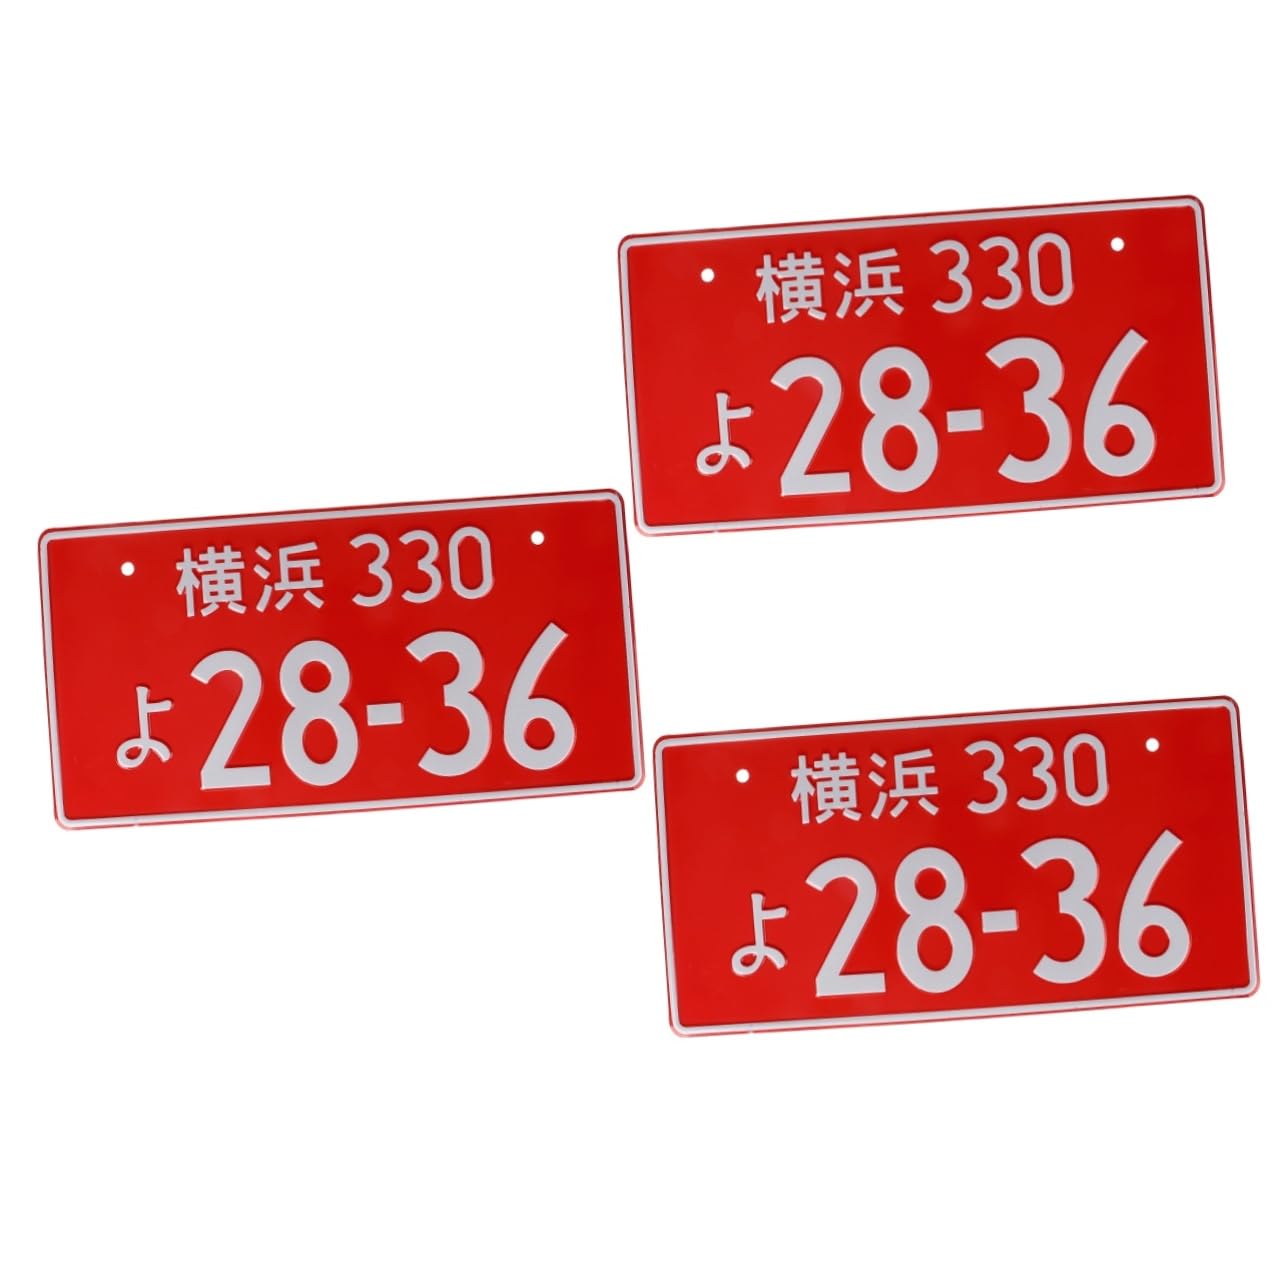 Mobestech 3st Nummernschilddekoration Japanisches Auto-tag Japanische Nummernschildhalterung Kfz-kennzeichenrahmen Patriotischer Nummernschildrahmen Kennzeichenhalter Rot Aluminiumlegierung von Mobestech